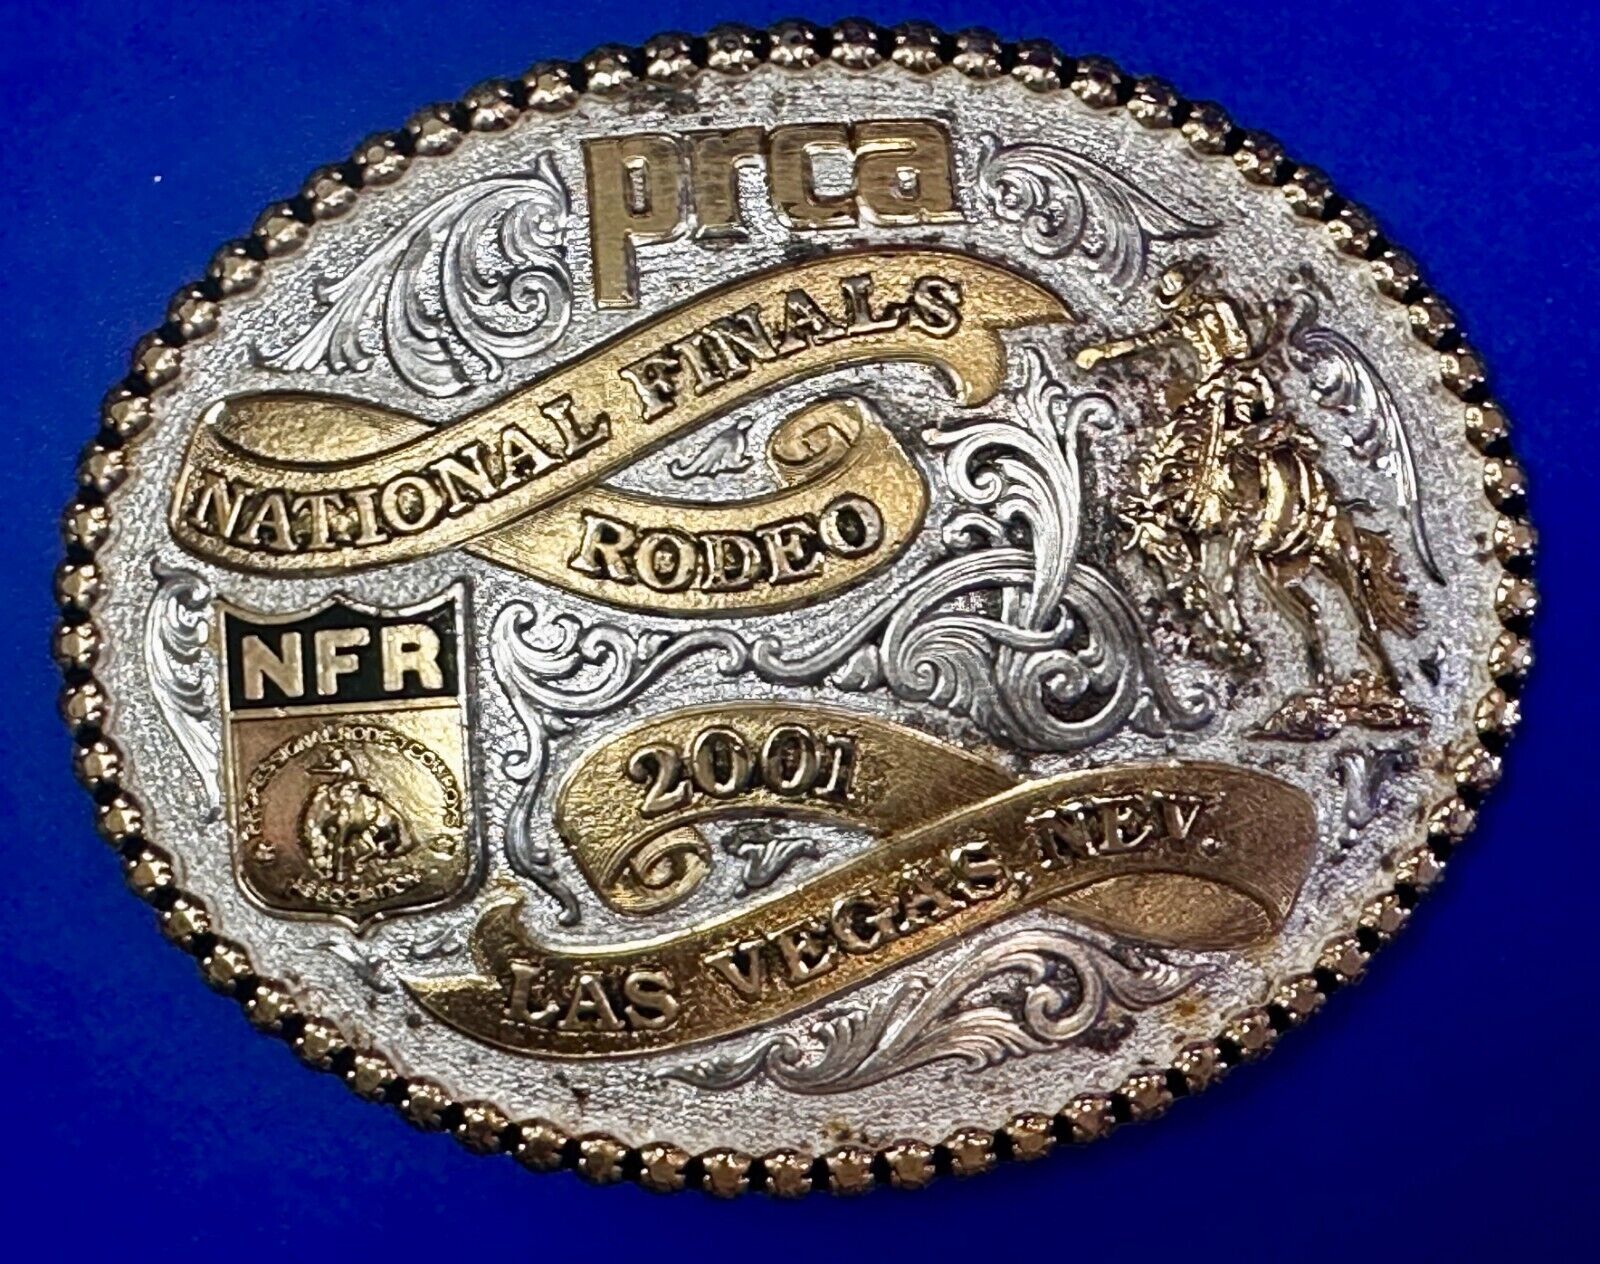 PRCA National Finals Rodeo NFR Las Vegas 2001 Montana Silversmiths Belt Buckle